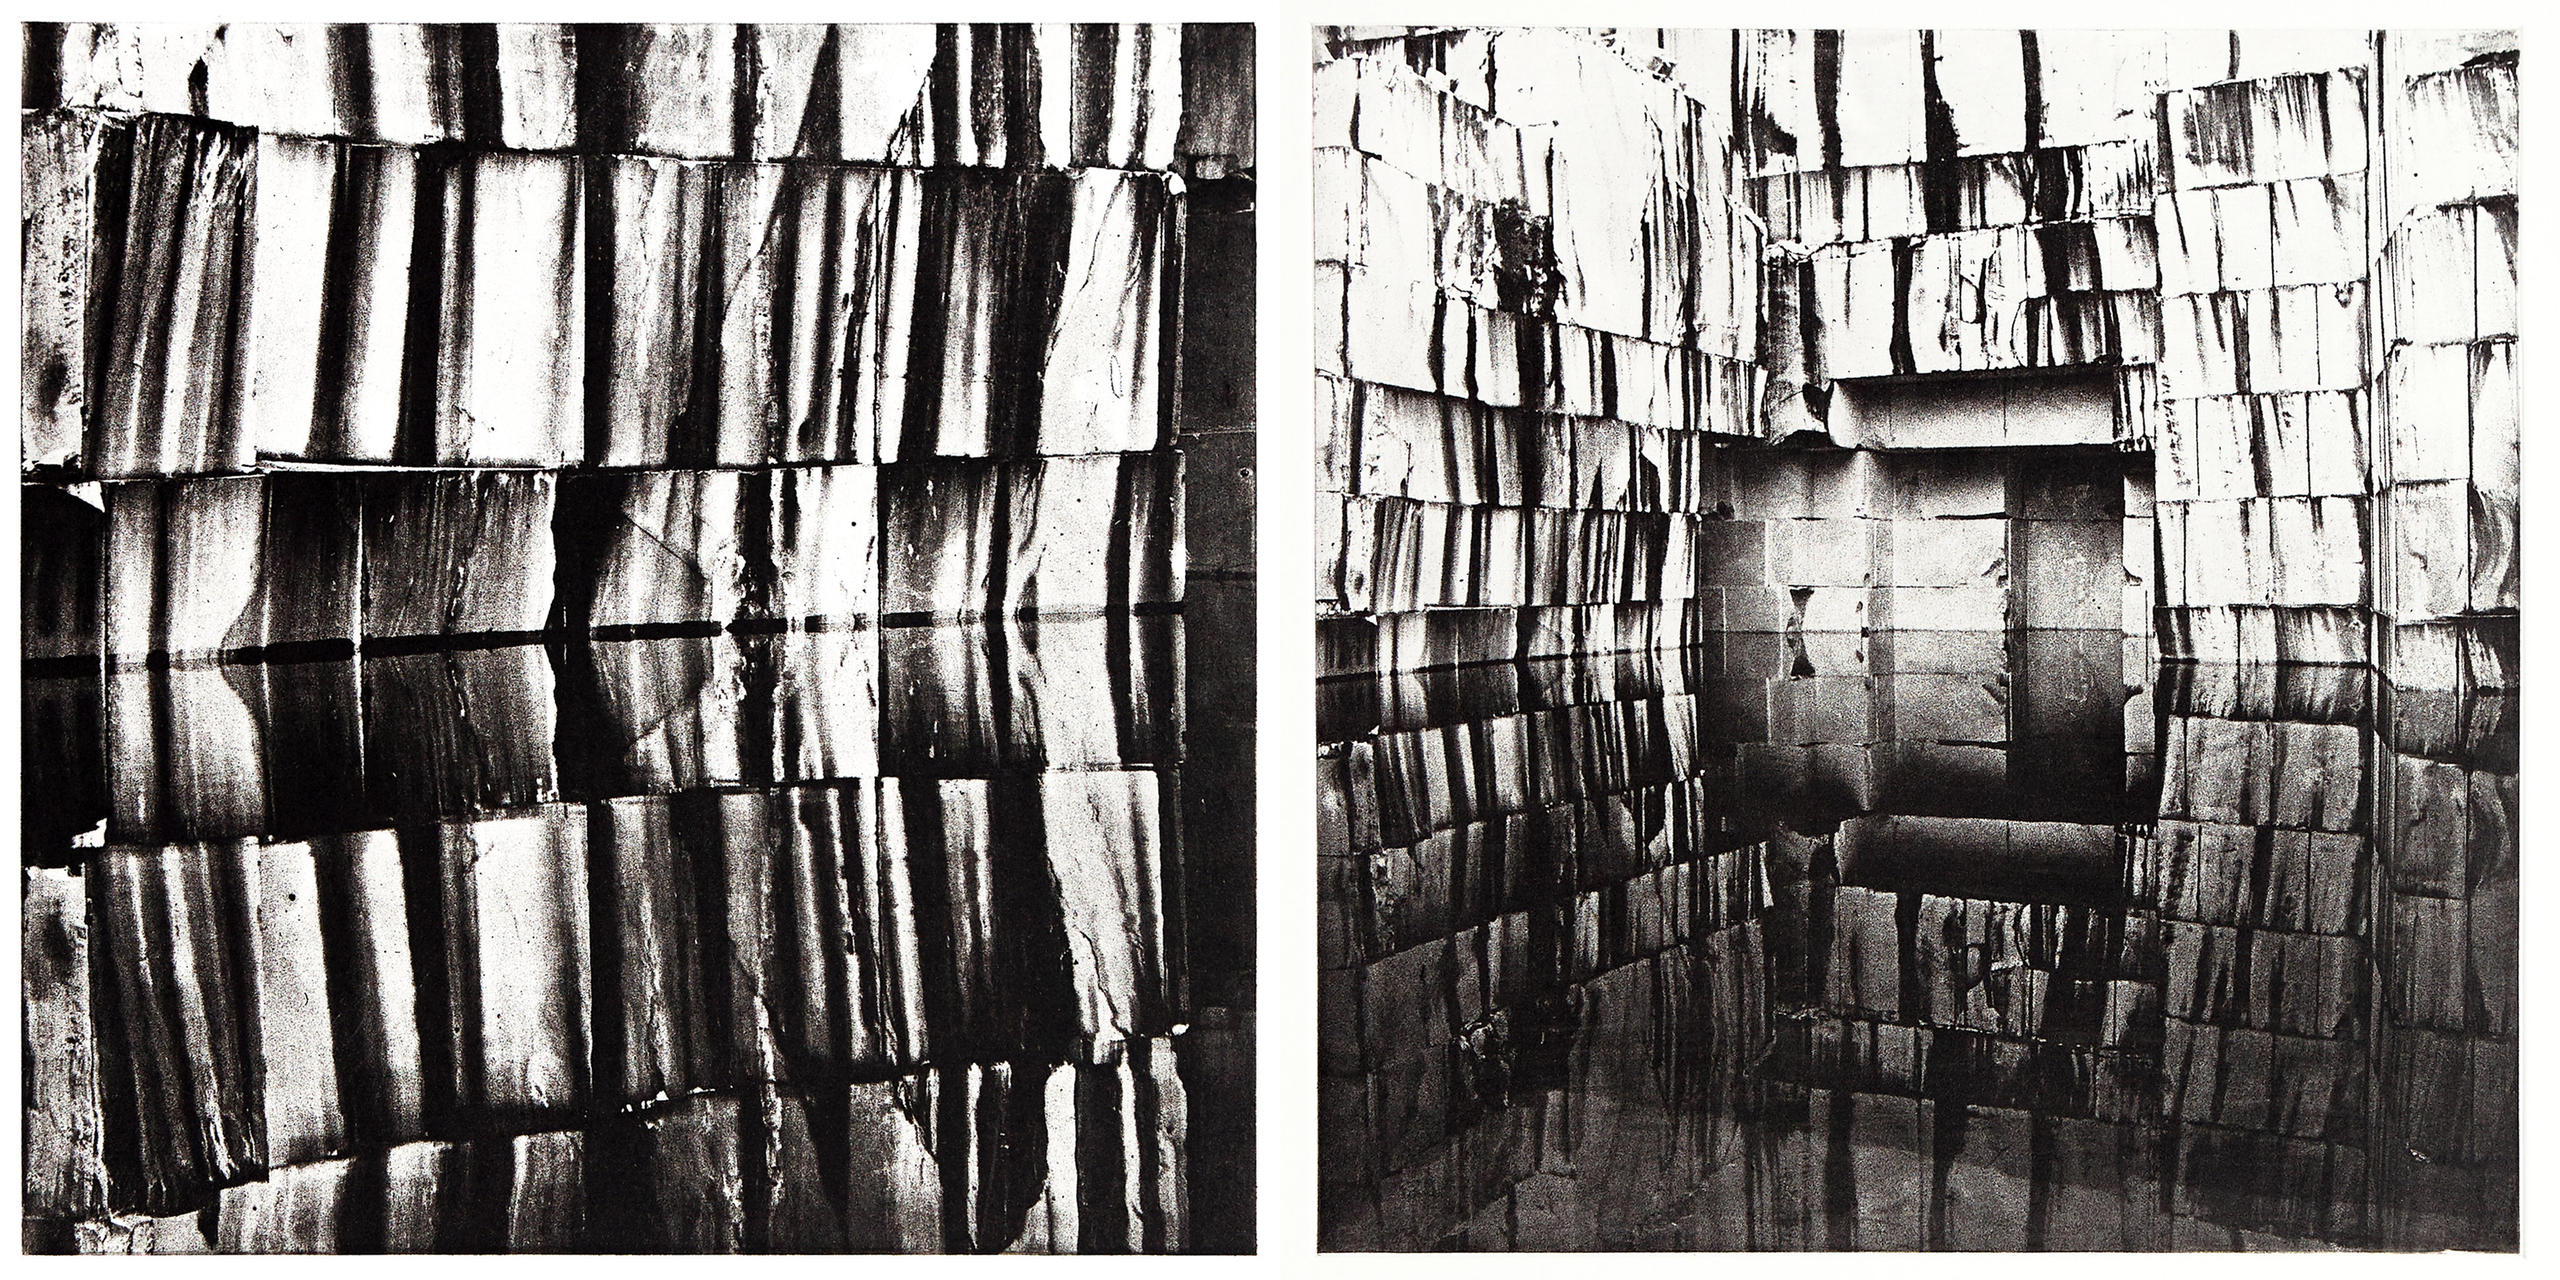 Zwei analoge Fotografien aus den Marmor Steinbrüchen von Carrara